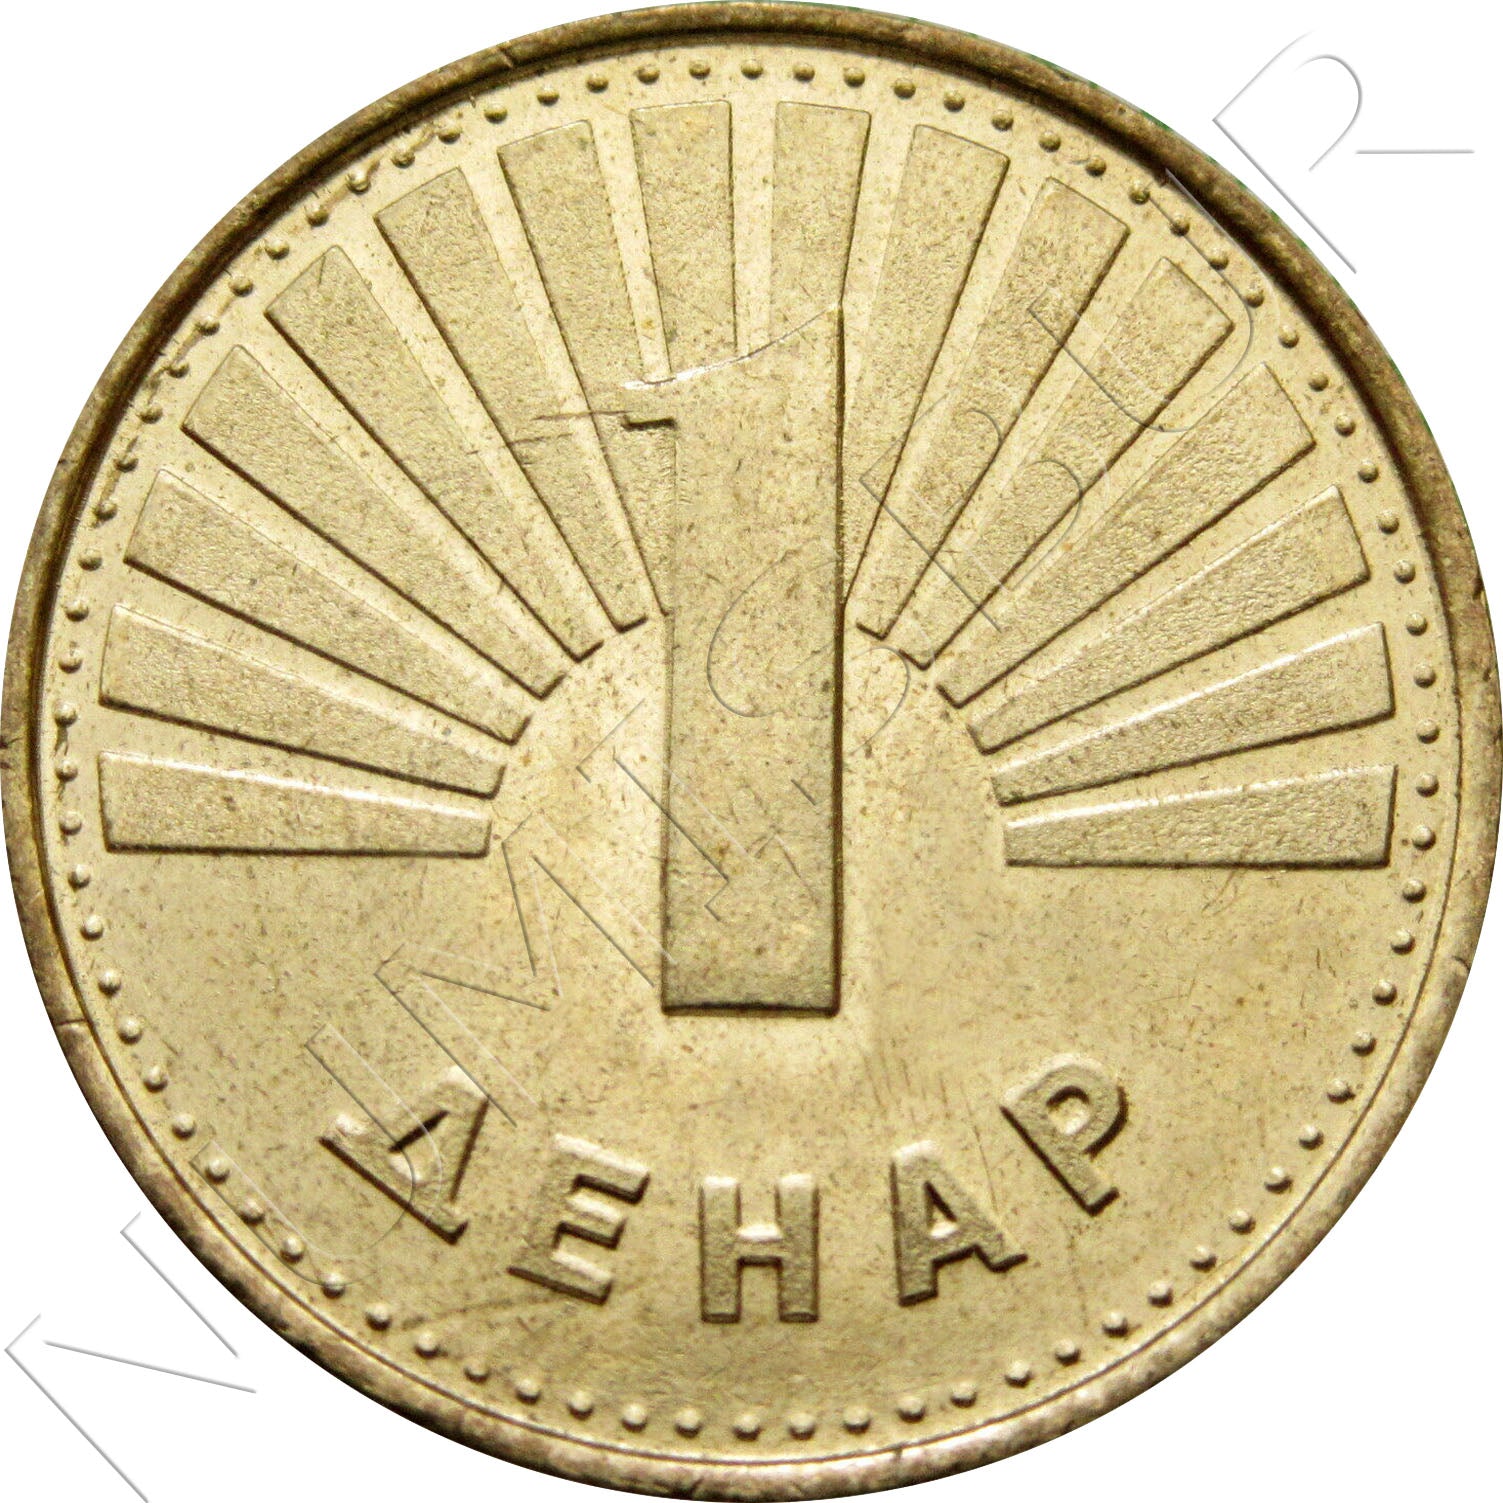 1 dinar MACEDONIA 2000 - Mule